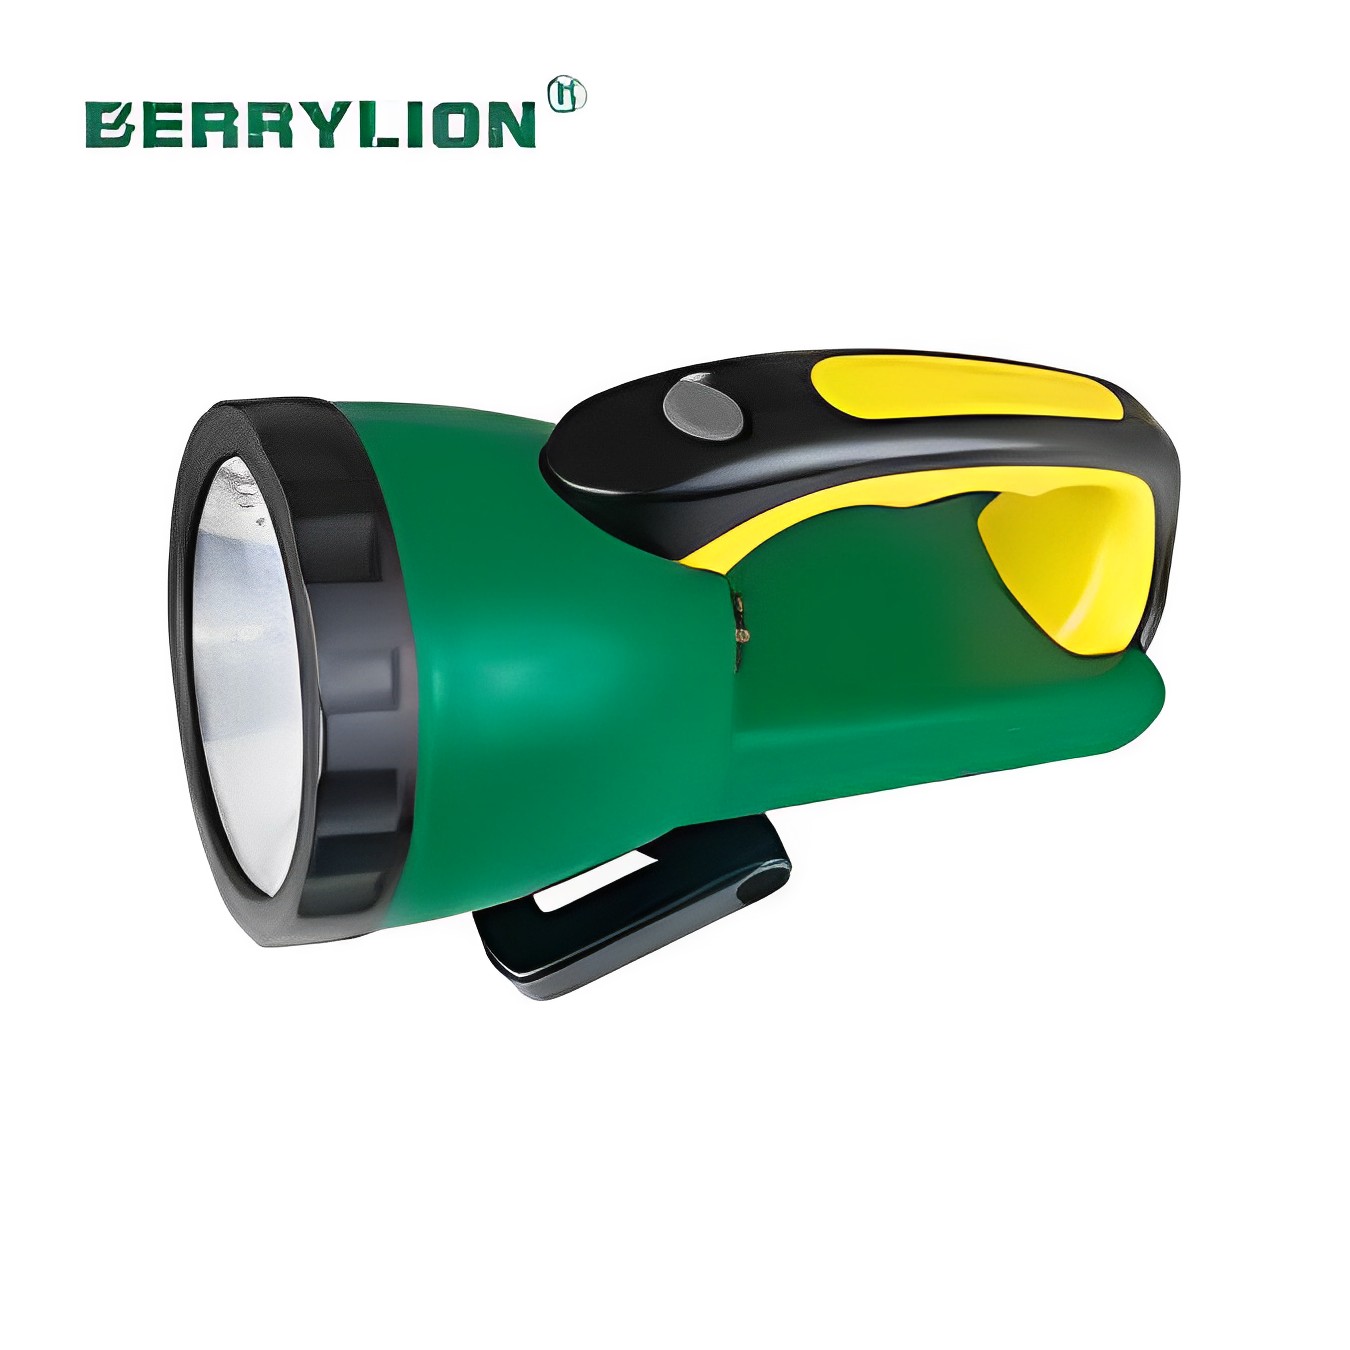 Hình ảnh 1 của mặt hàng Đèn làm việc (LED) loại nhỏ Berrylion 031801001